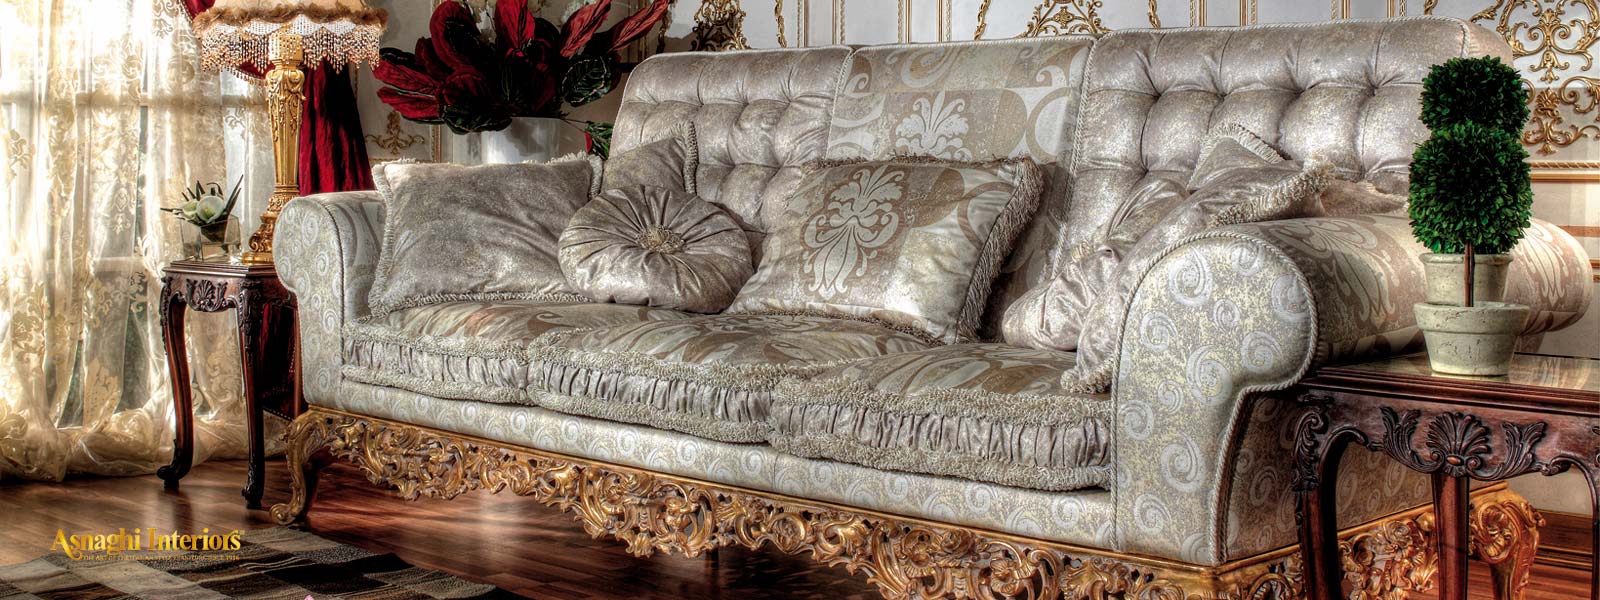 Klasik İtalyan mobilyaları